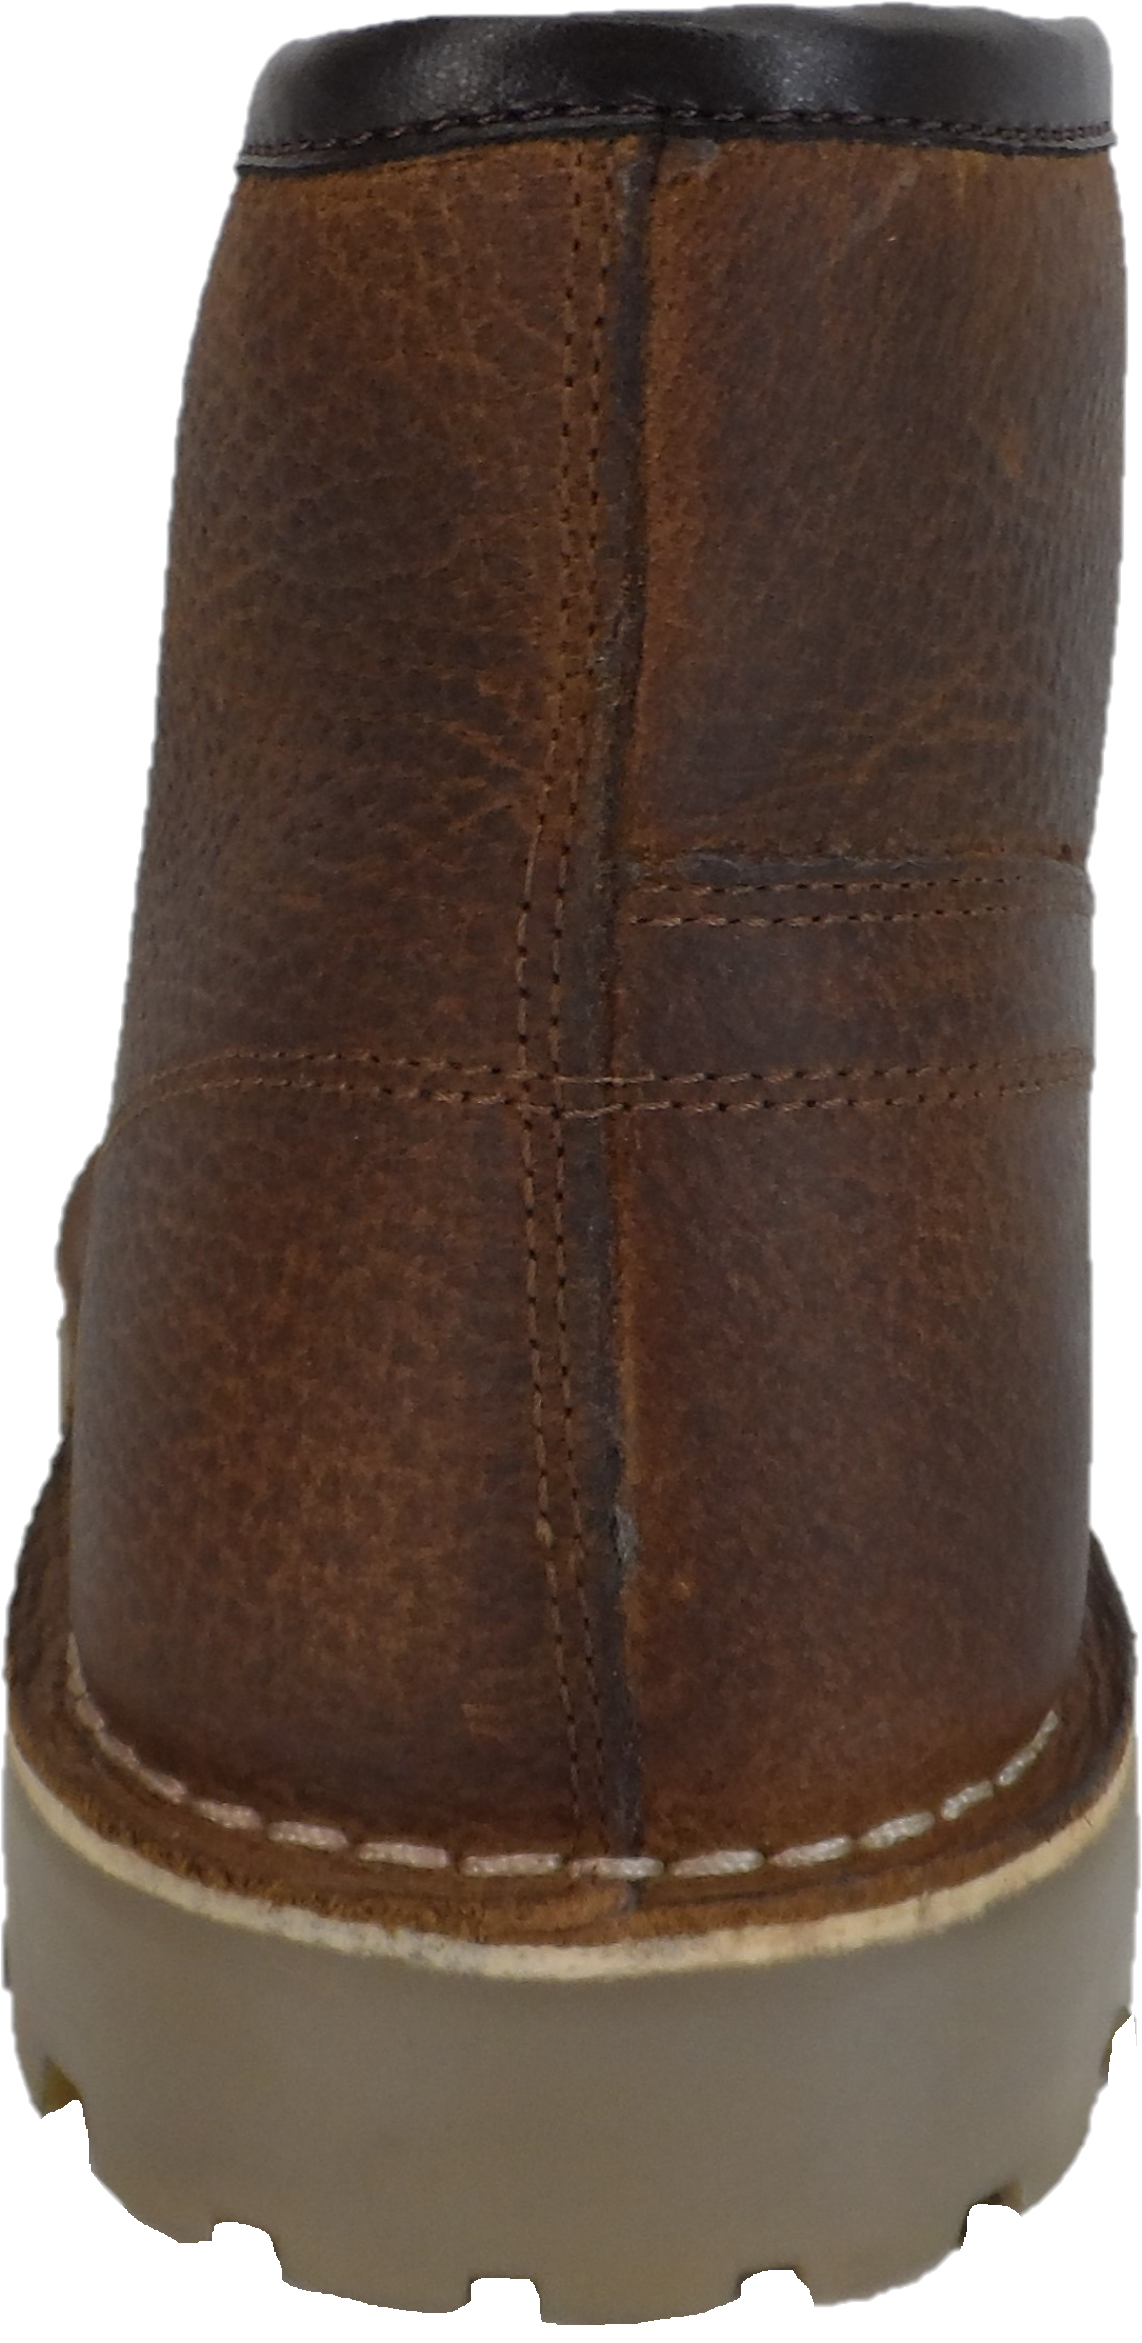 Monkey Boots originali in pelle fiore marrone stile anni '70